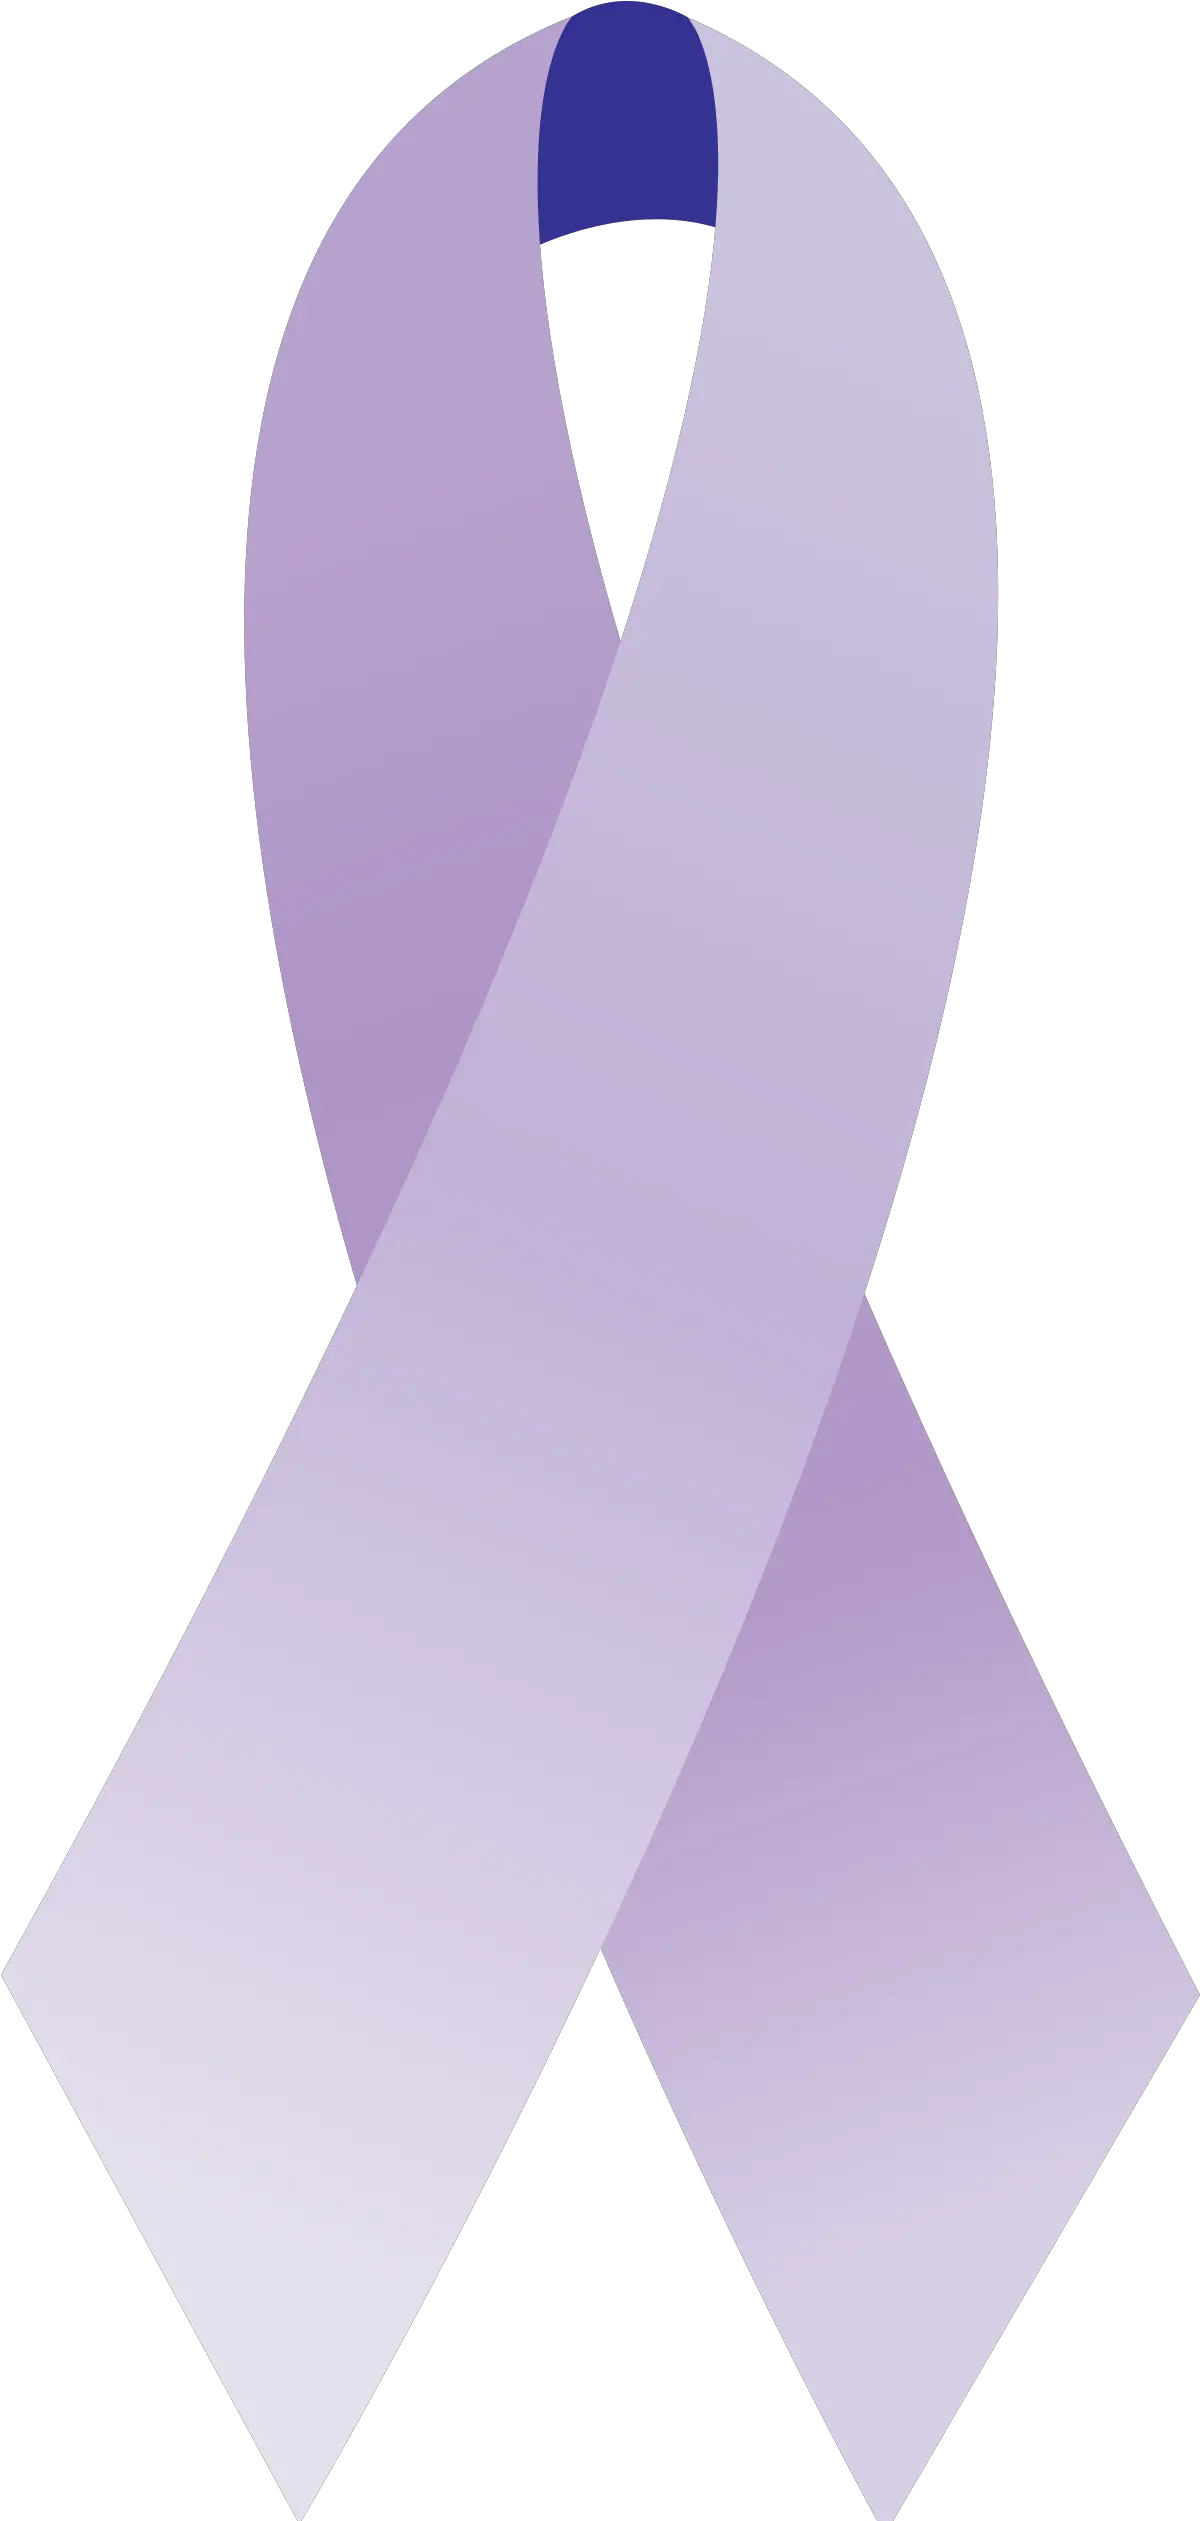 Filecancer Ribbon Generalsvg Wikipedia Cancer Ribbons Transparent Lavender Png Ribbon Logo Png